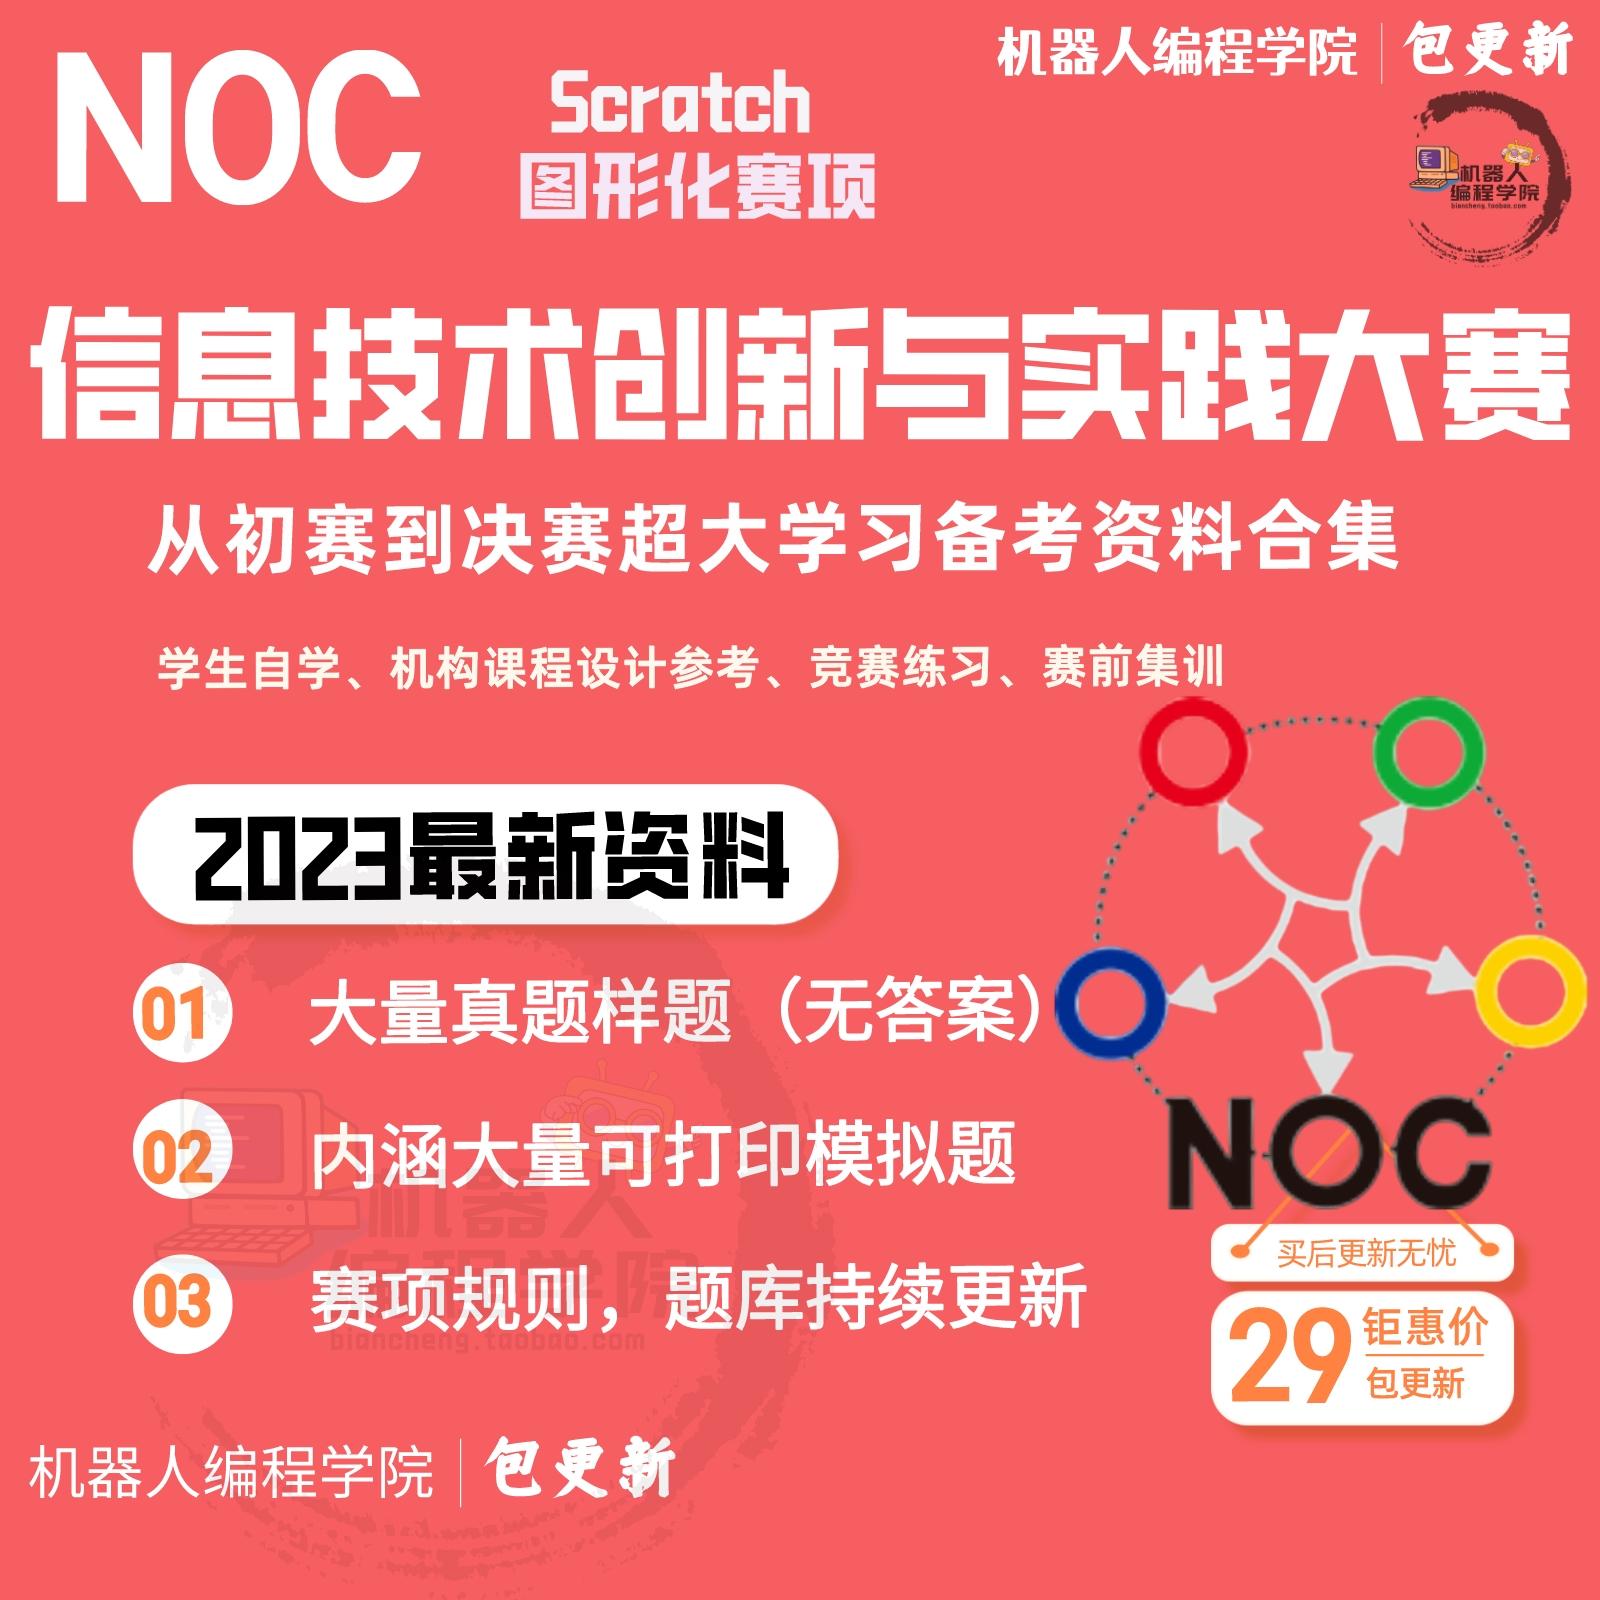 2023年NOC信息技术创新与实践大赛scratch图形化真题模拟题训练库